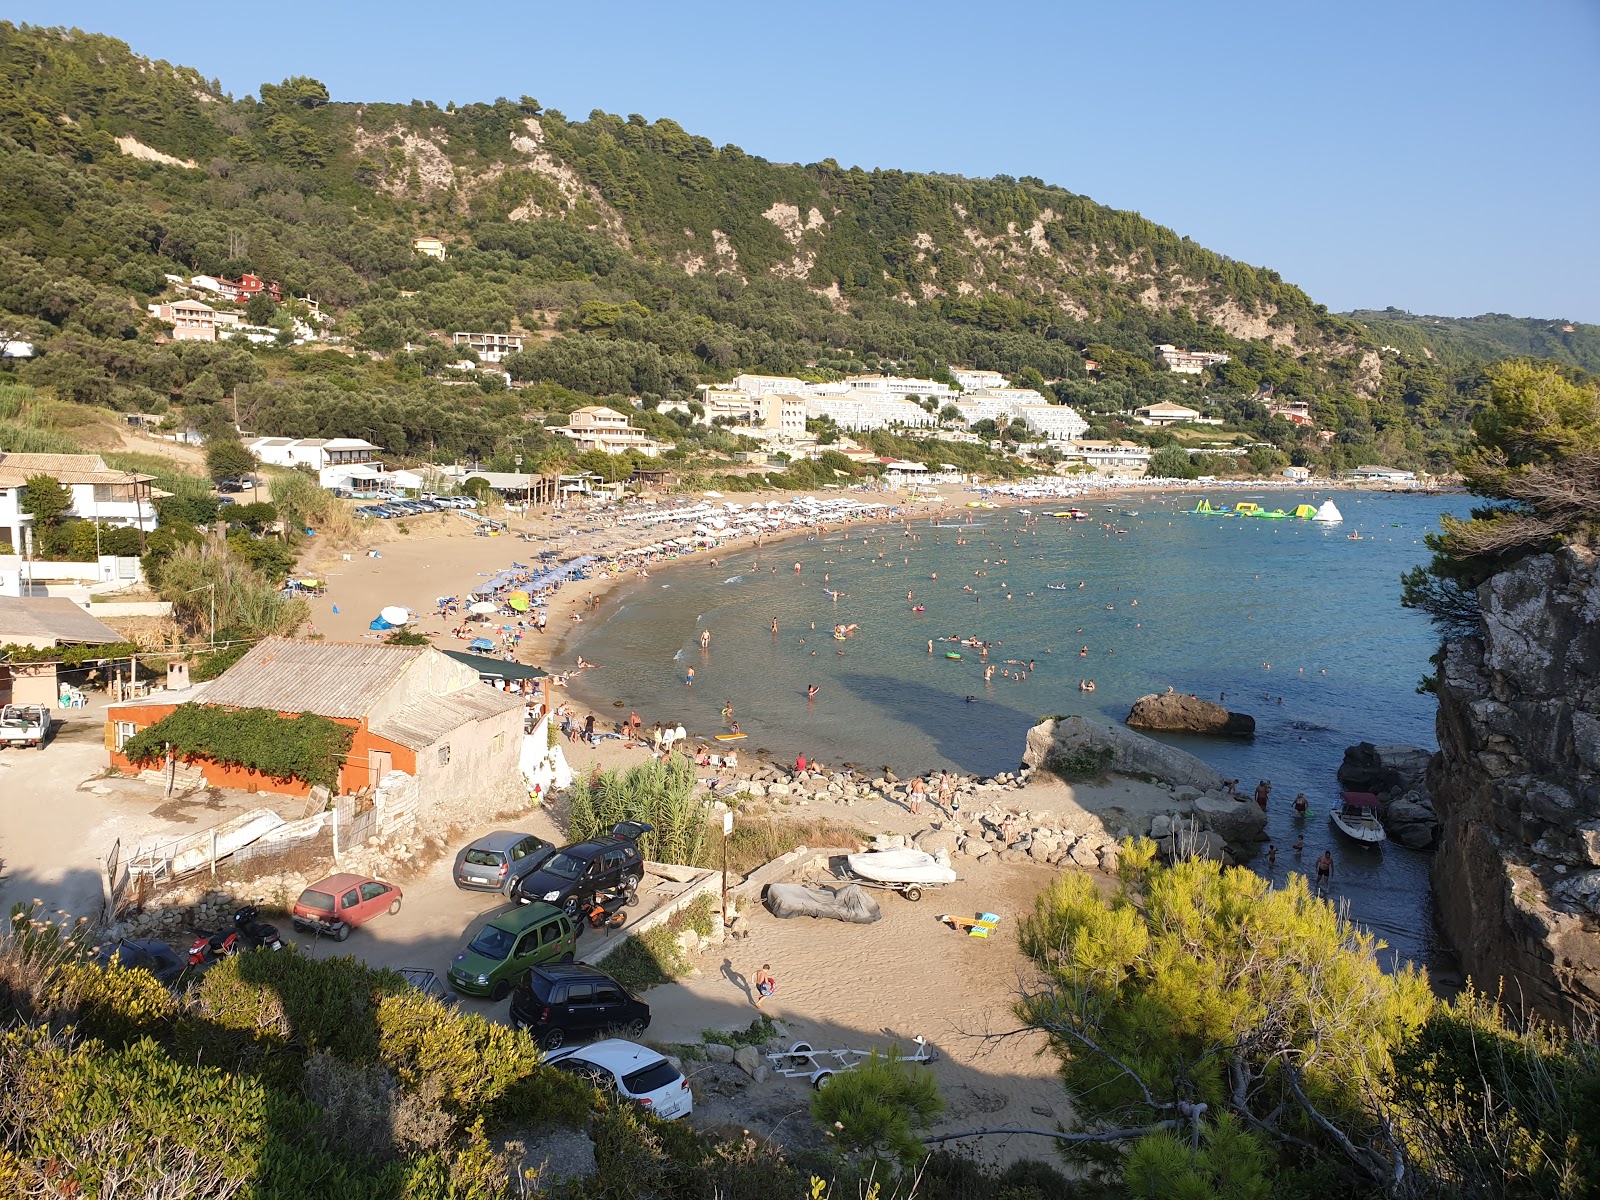 Foto av Kontogialos Stranden med hög nivå av renlighet